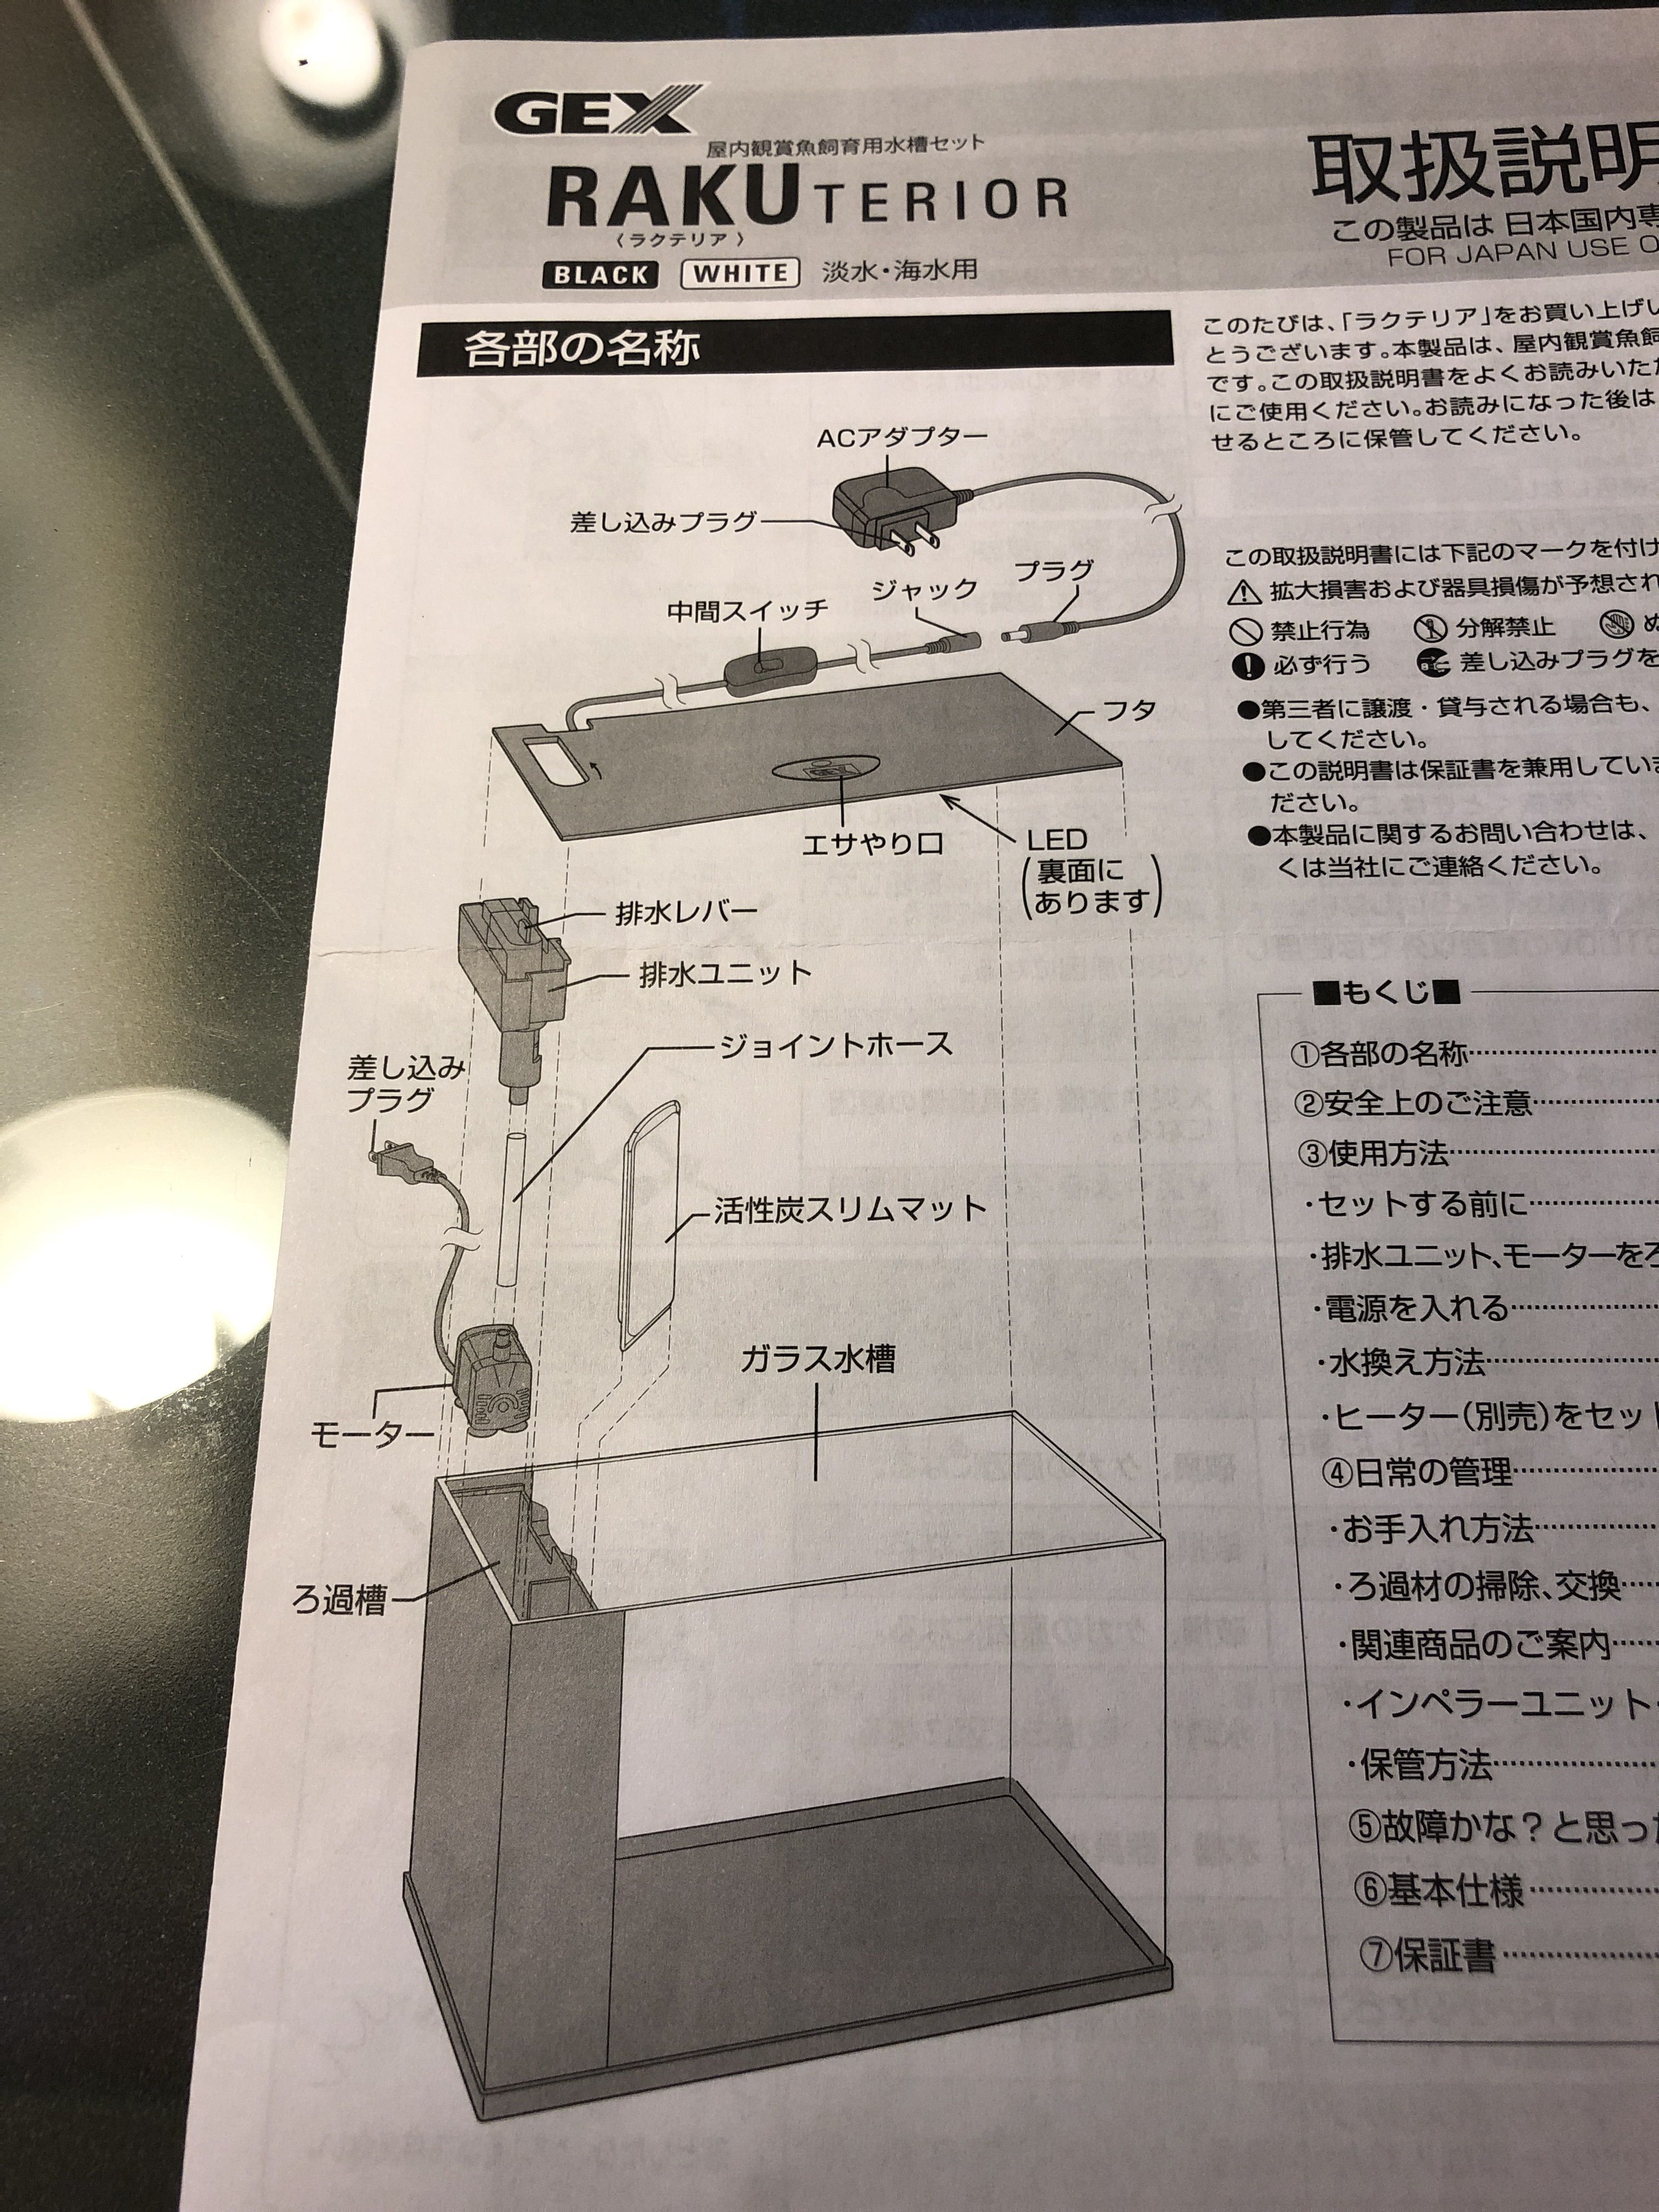 ラクテリア水槽の立ち上げ ろ過強化 ありえないありえる水槽を作りたい ヲカマの日記 楽天ブログ